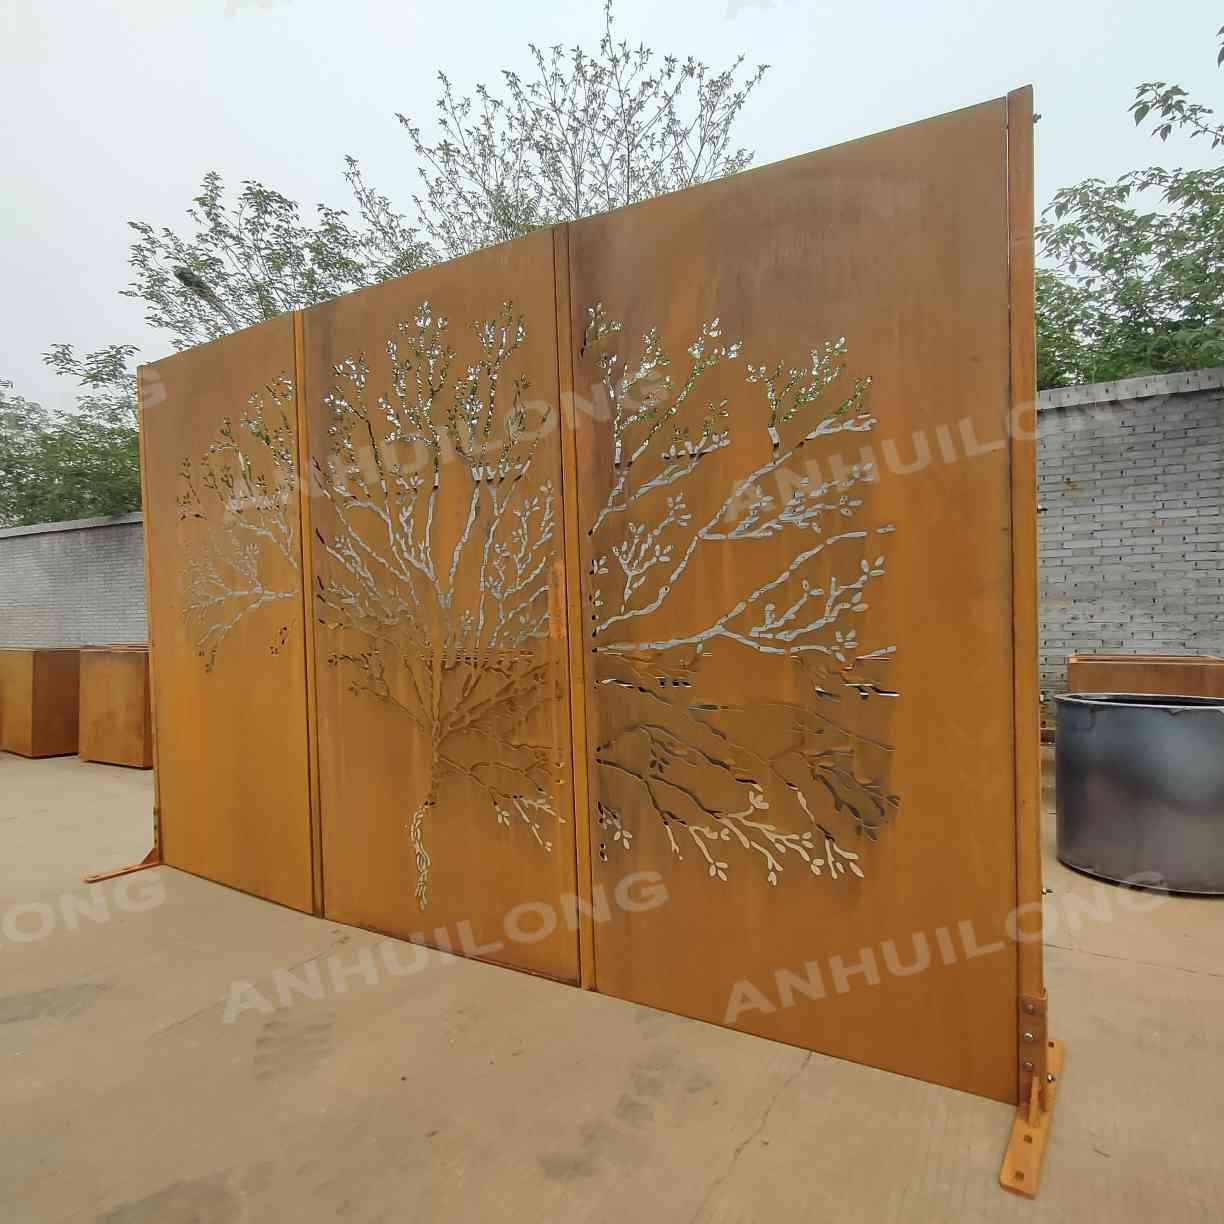 Rusted outdoor garden decorative metal corten steel screens pane